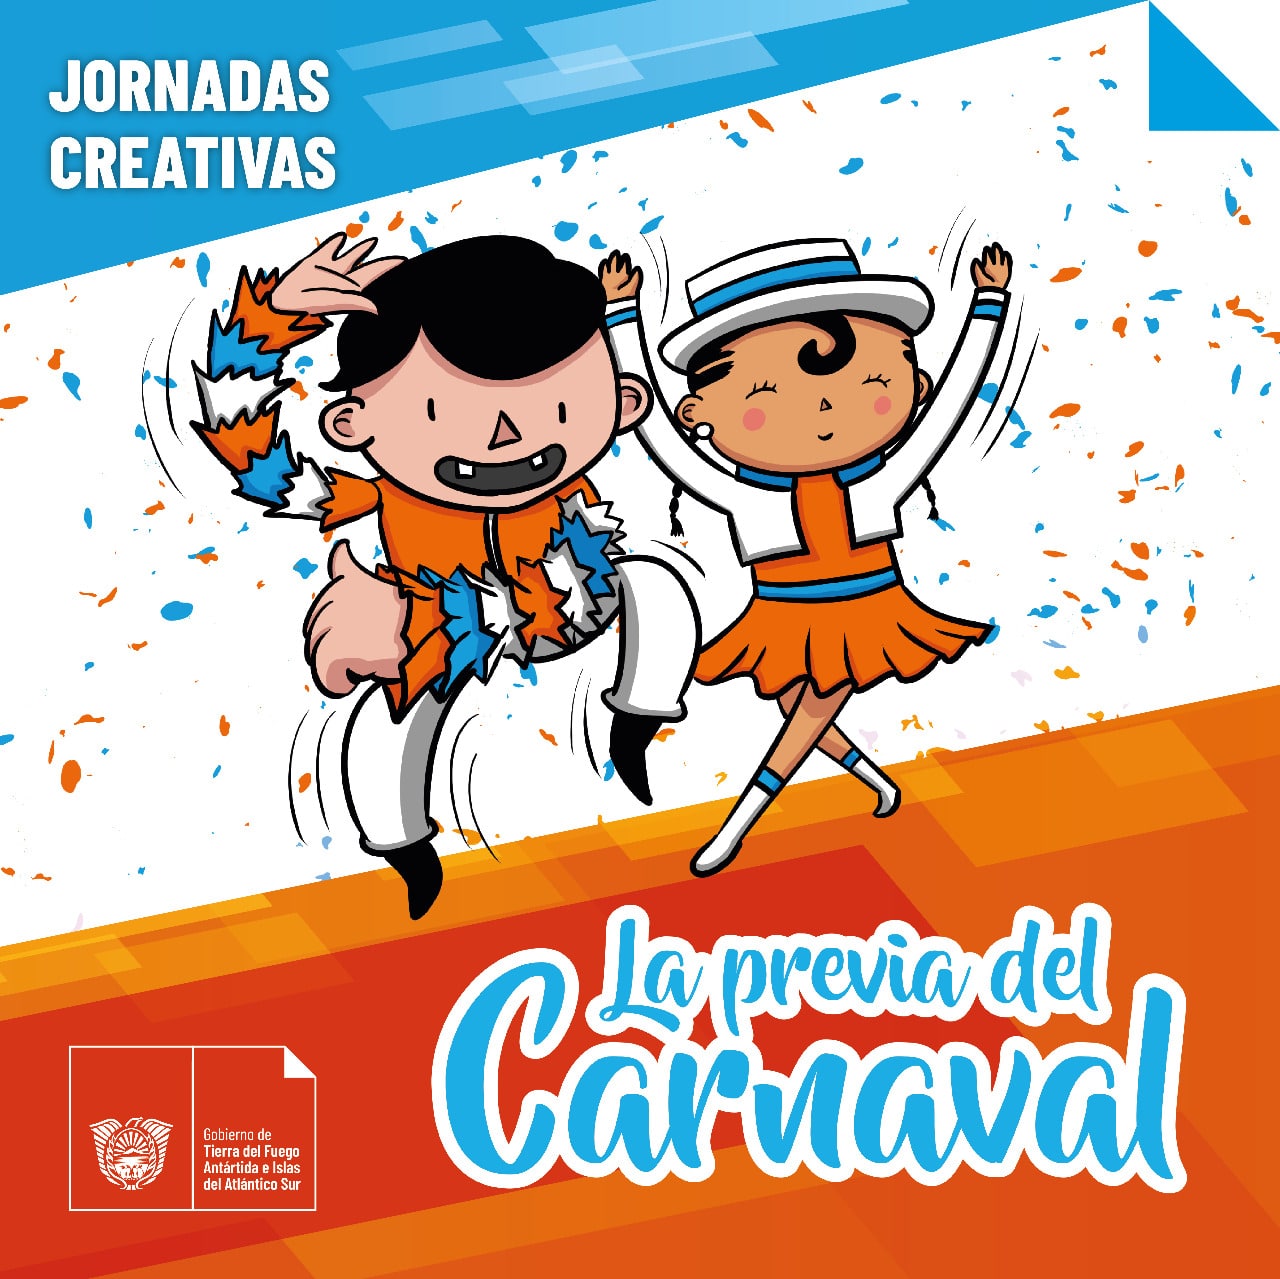 Carnaval: Realizarán actividades artístico culturales para su celebración